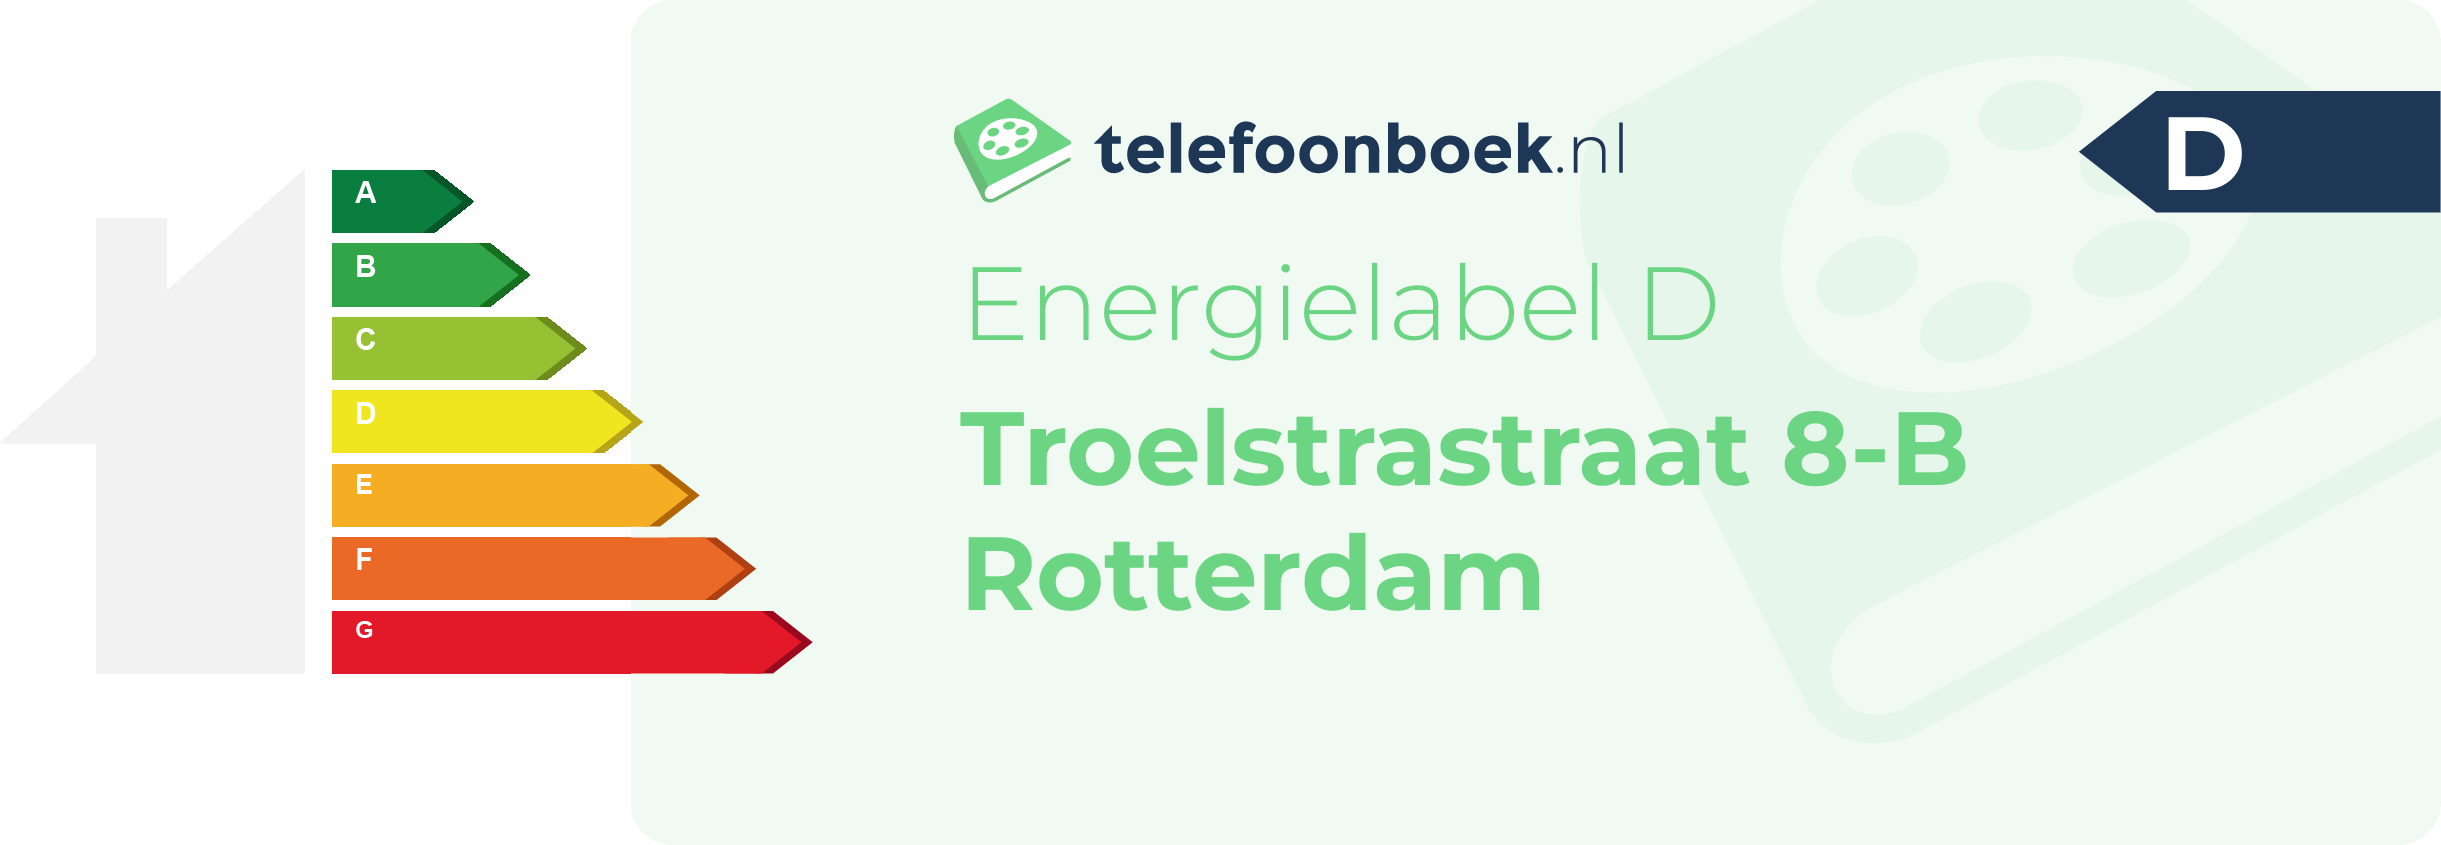 Energielabel Troelstrastraat 8-B Rotterdam